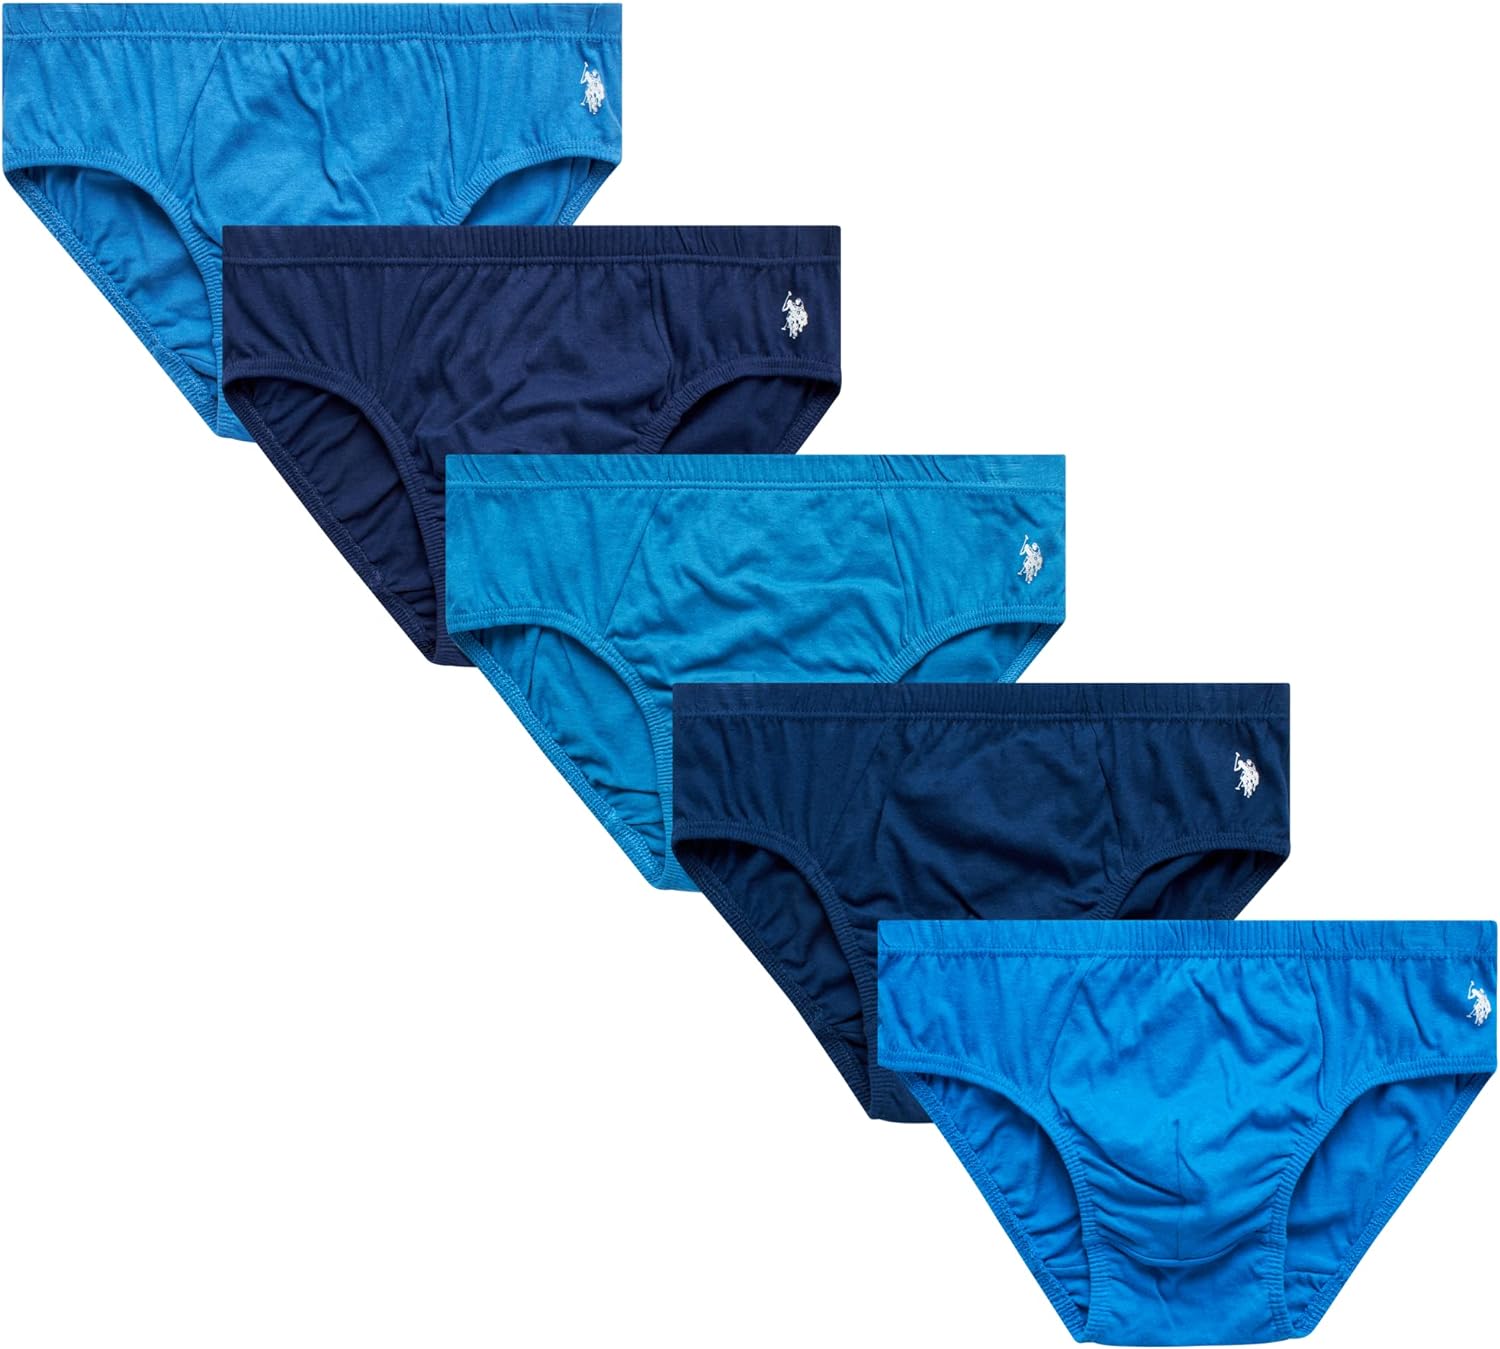 U.S. Polo Assn. Men's Underwear - Low Rise Briefs with Contour Pouch (5  Pack)